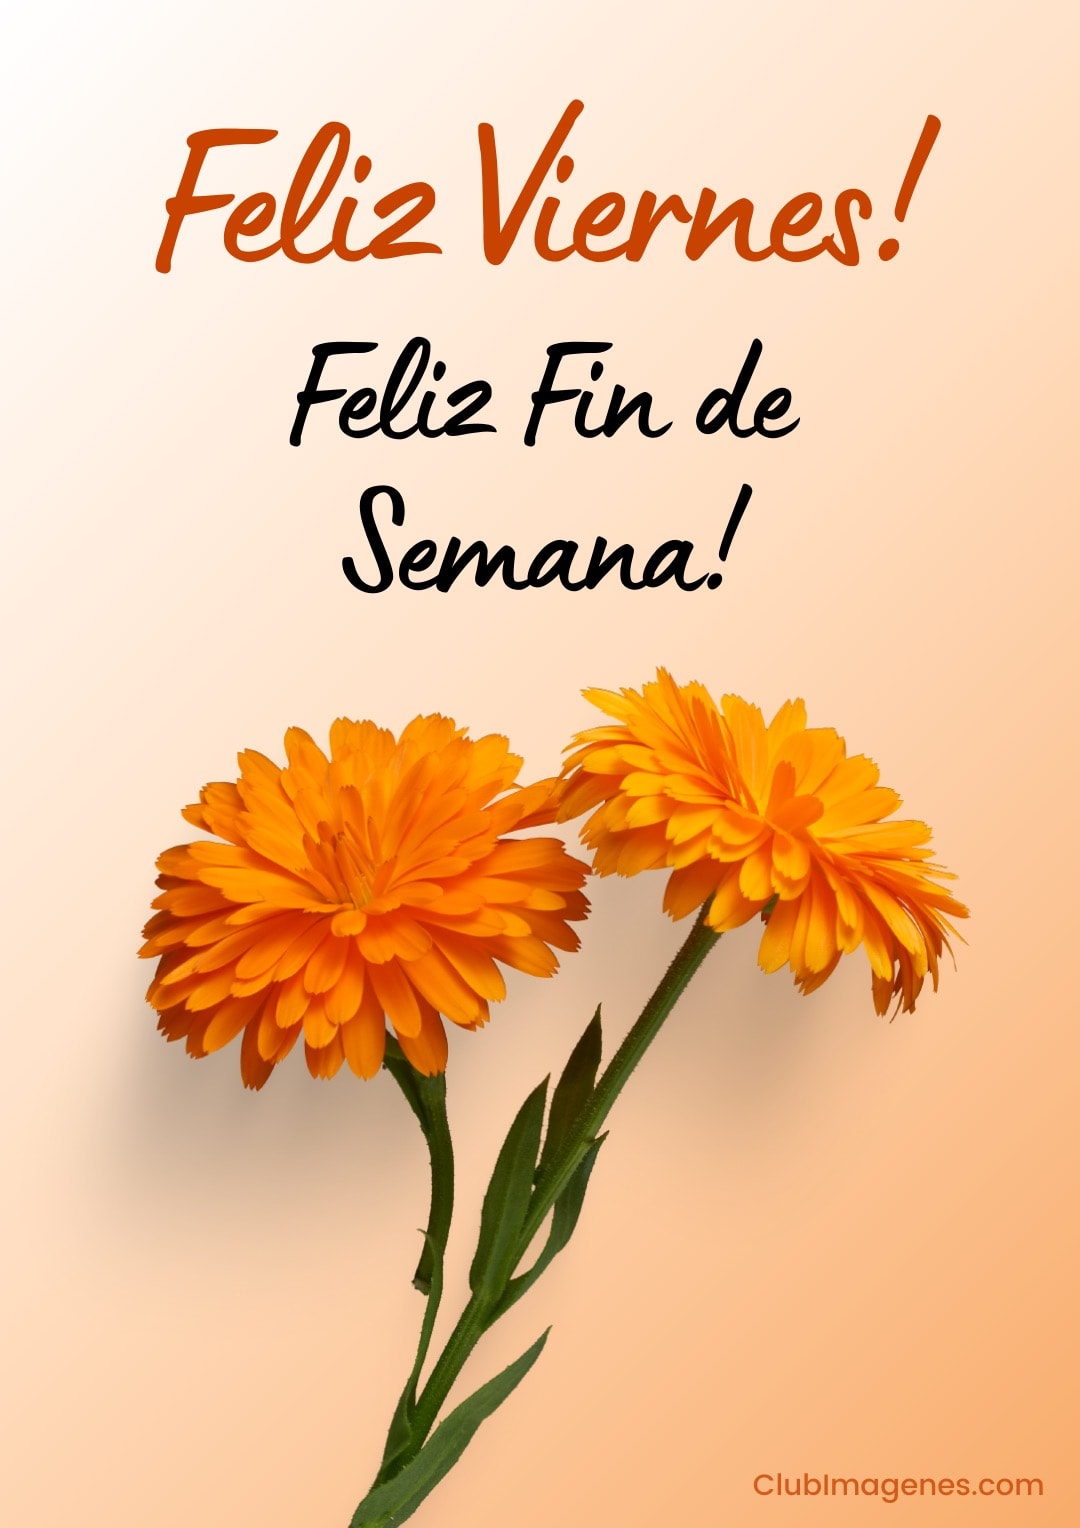 Flores naranjas con un mensaje que desea un feliz viernes y fin de semana